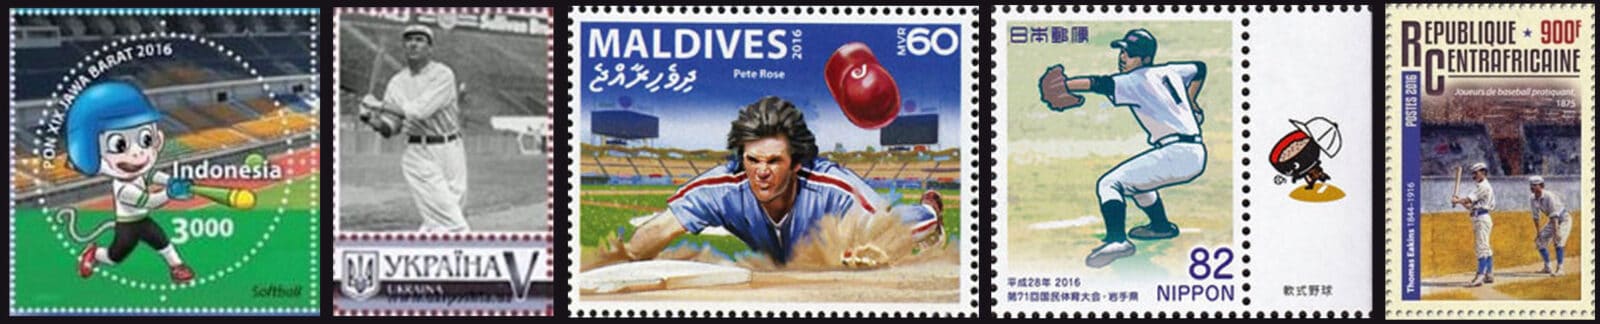 2016 Baseball Postage Stamps header